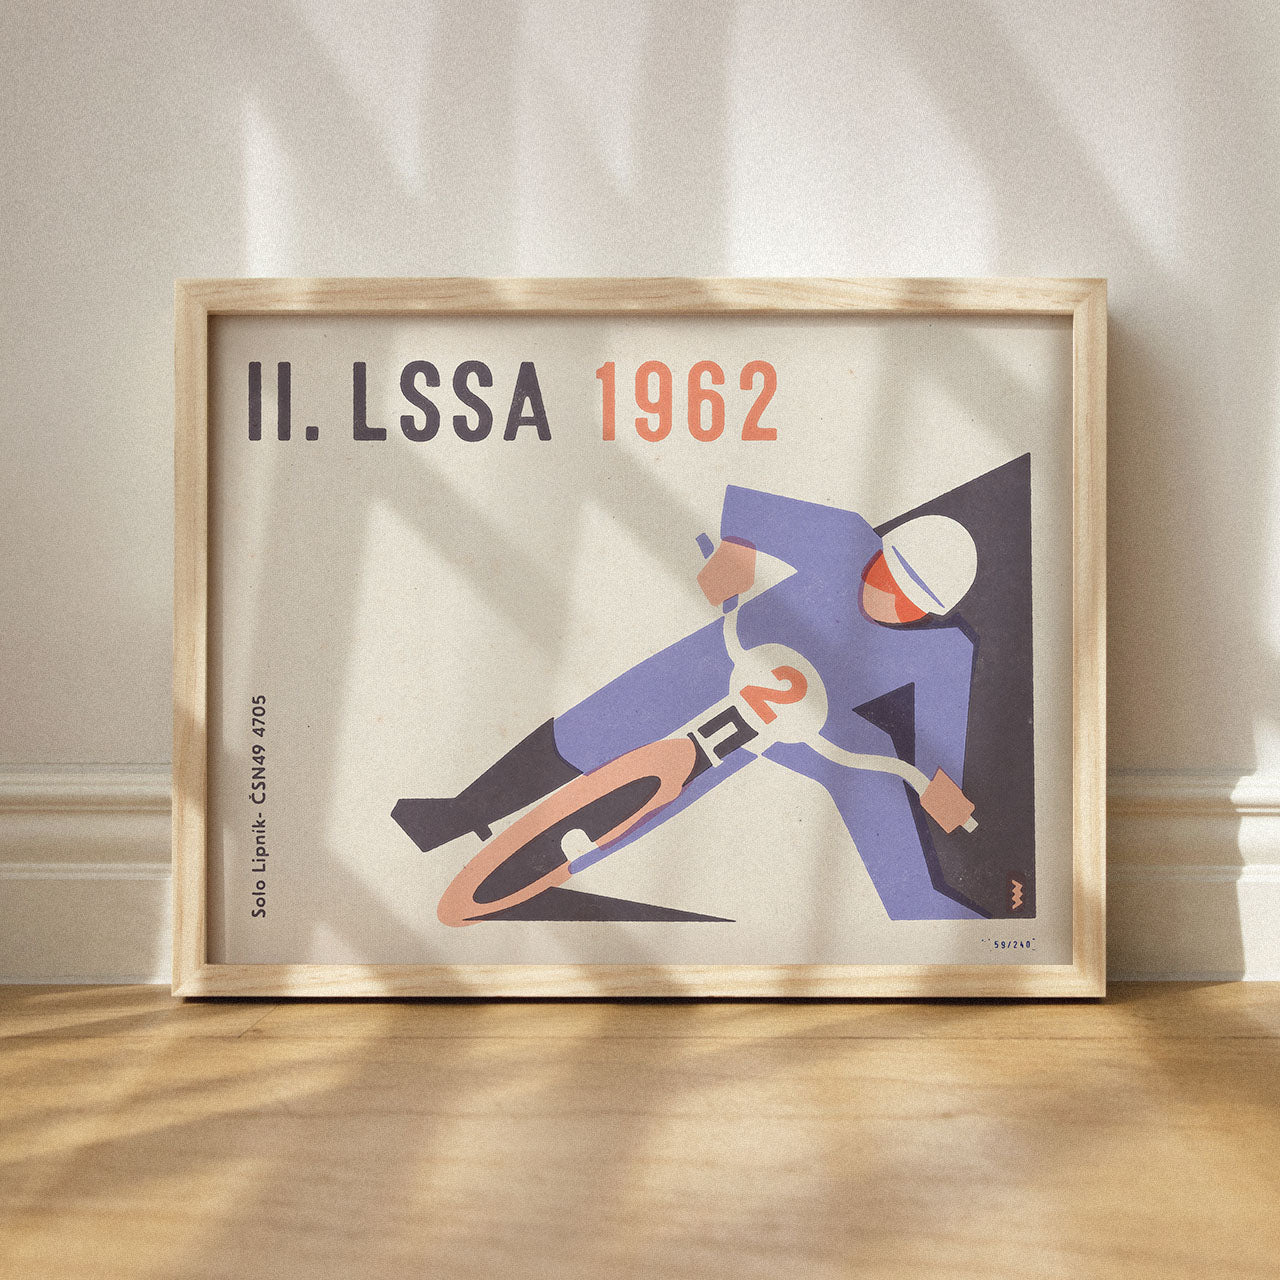 II. LSSA 1962 – Speedway – Poster 40 x 30 cm 